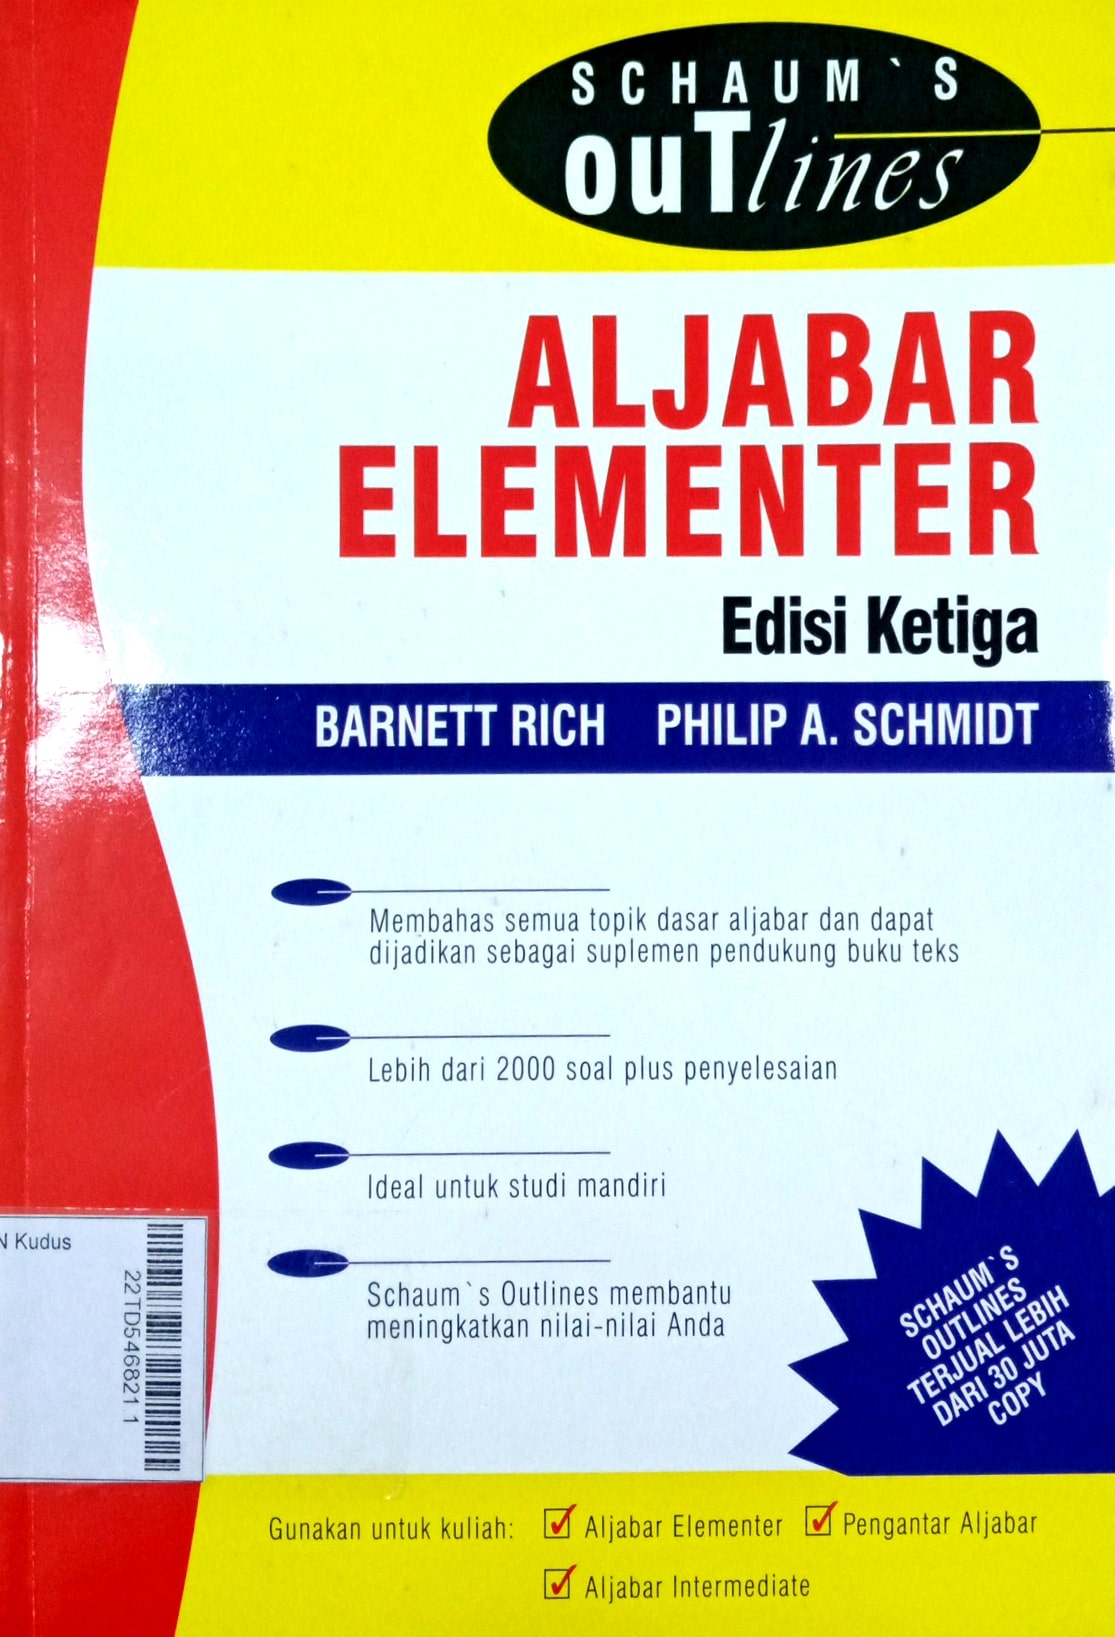 Schaum's Outlines of Aljabar Elementer Edisi Ketiga